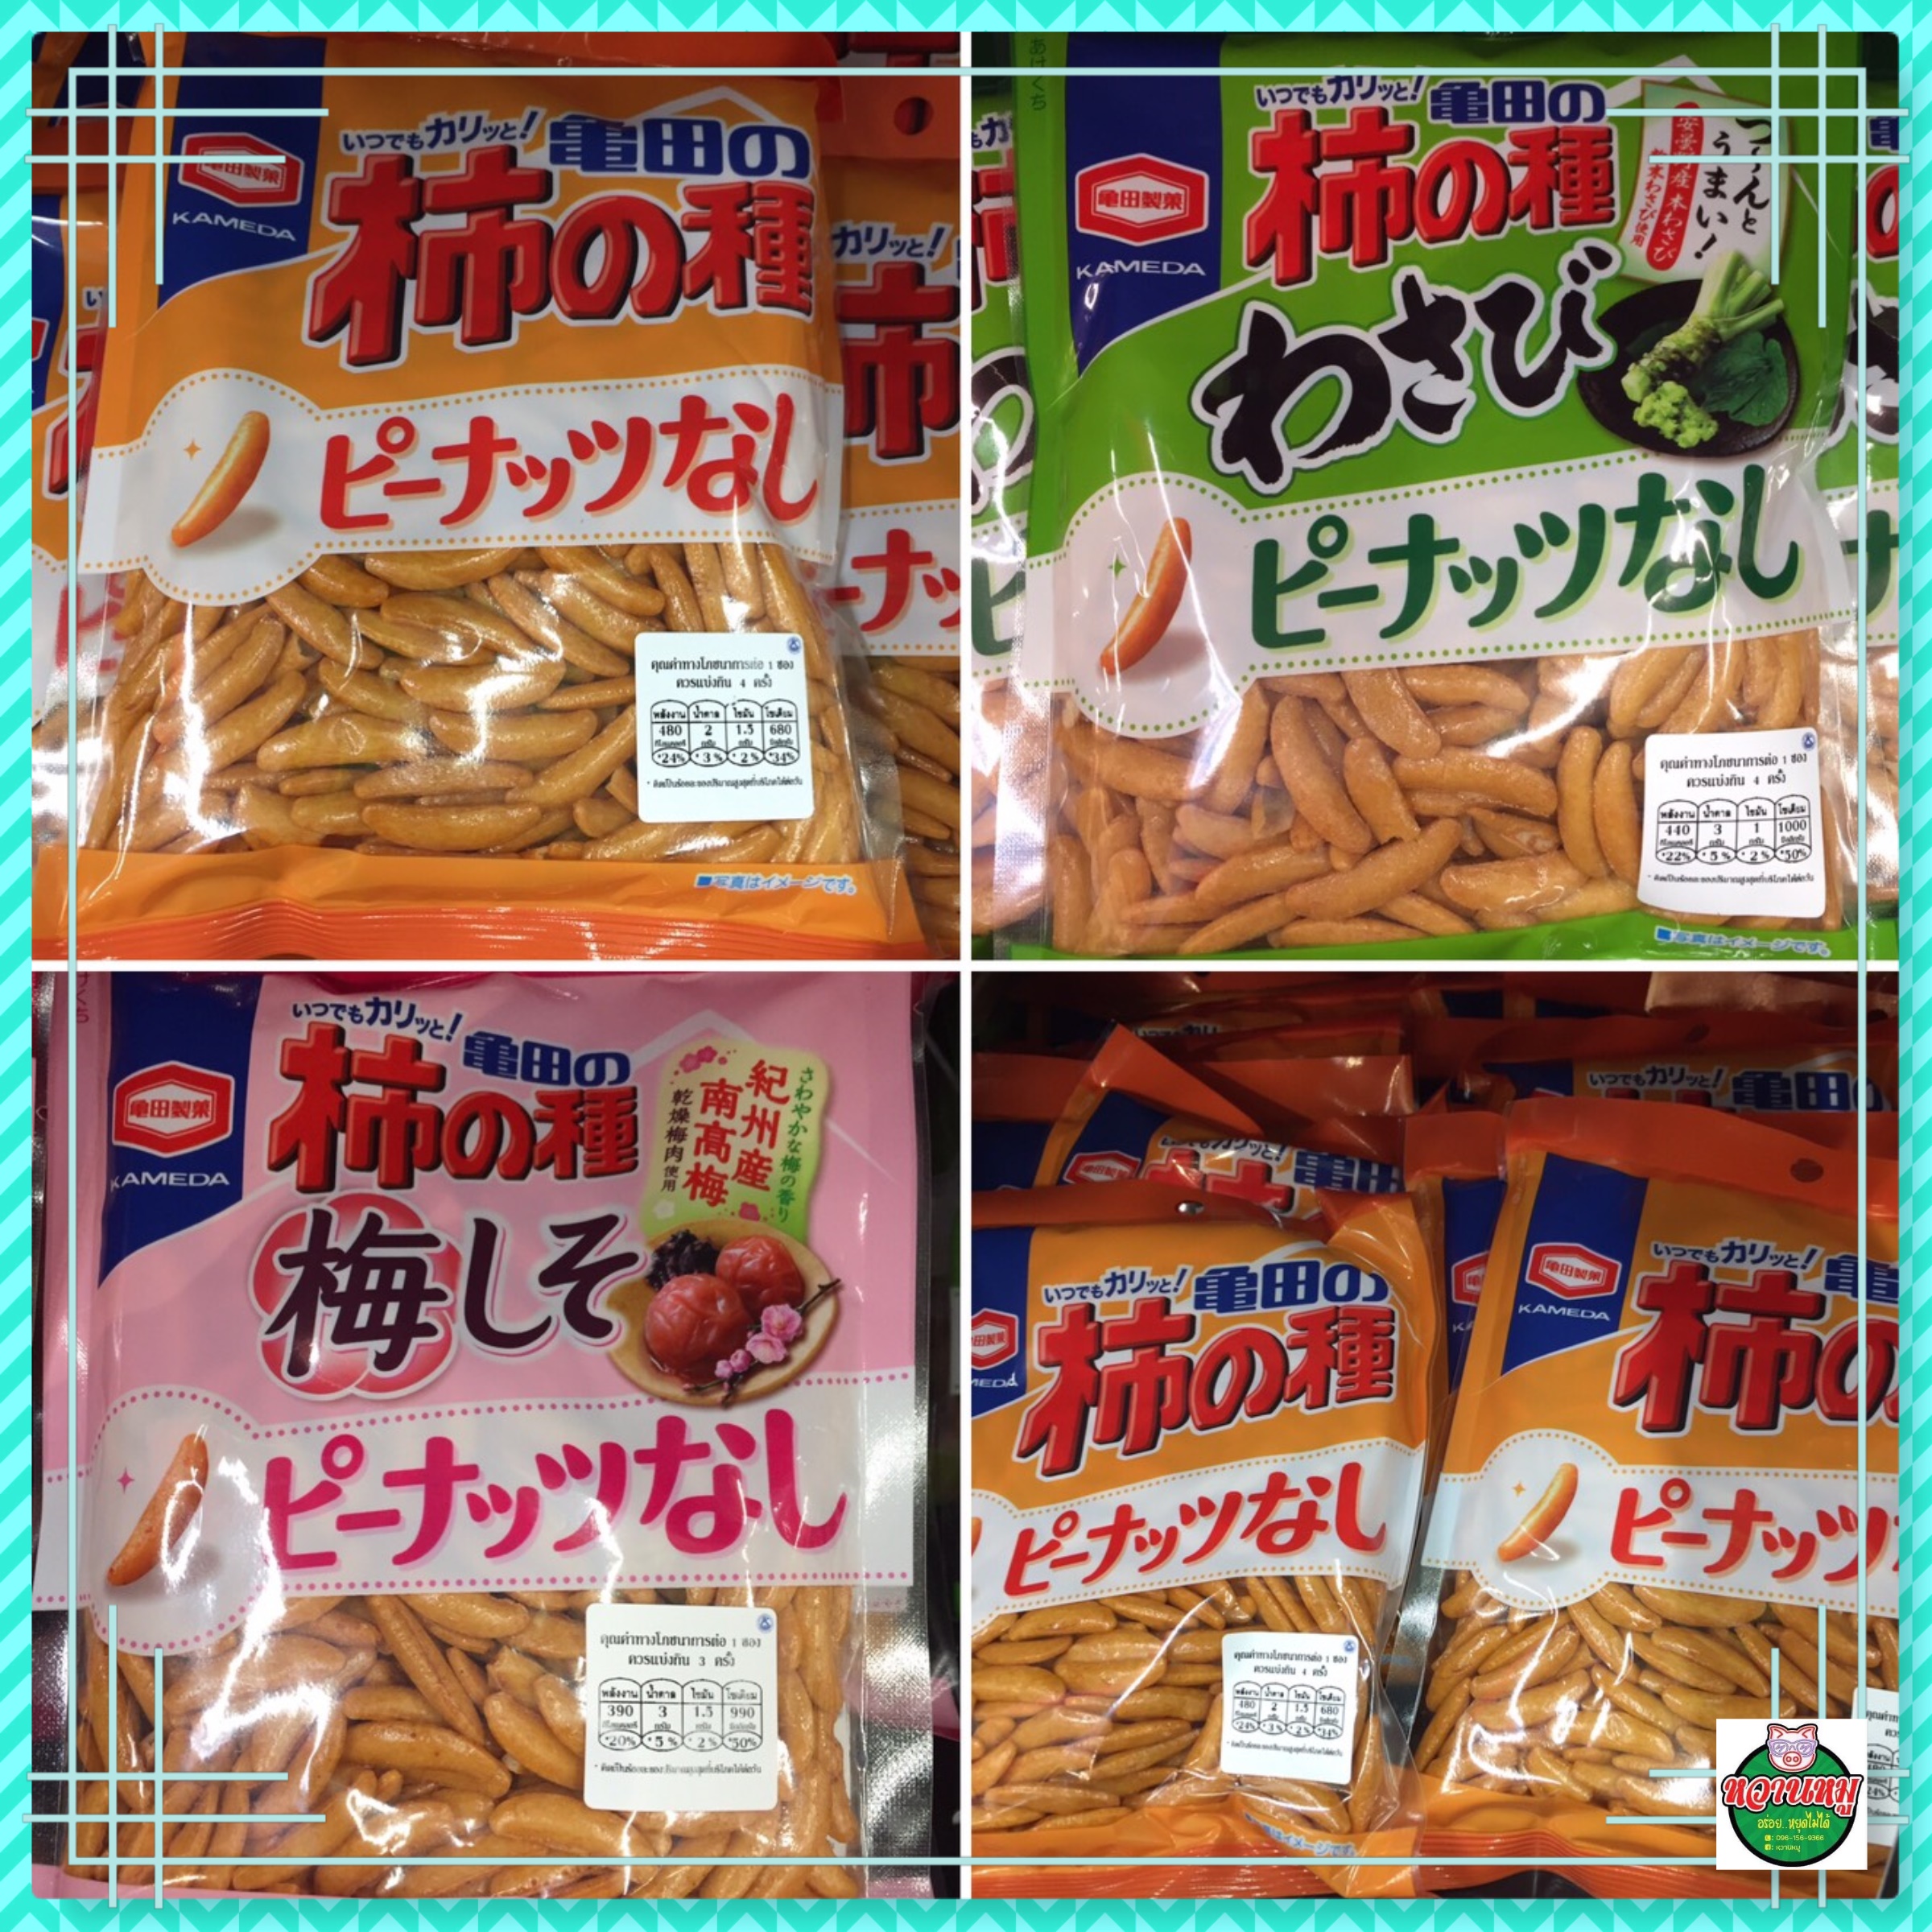 ขนมญี่ปุ่น ขนมข้าวอบกรอบปรุงรส คากิโนะ ทาเนะ KAKI NO TANE สินค้าขายดีจากญี่ปุ่น